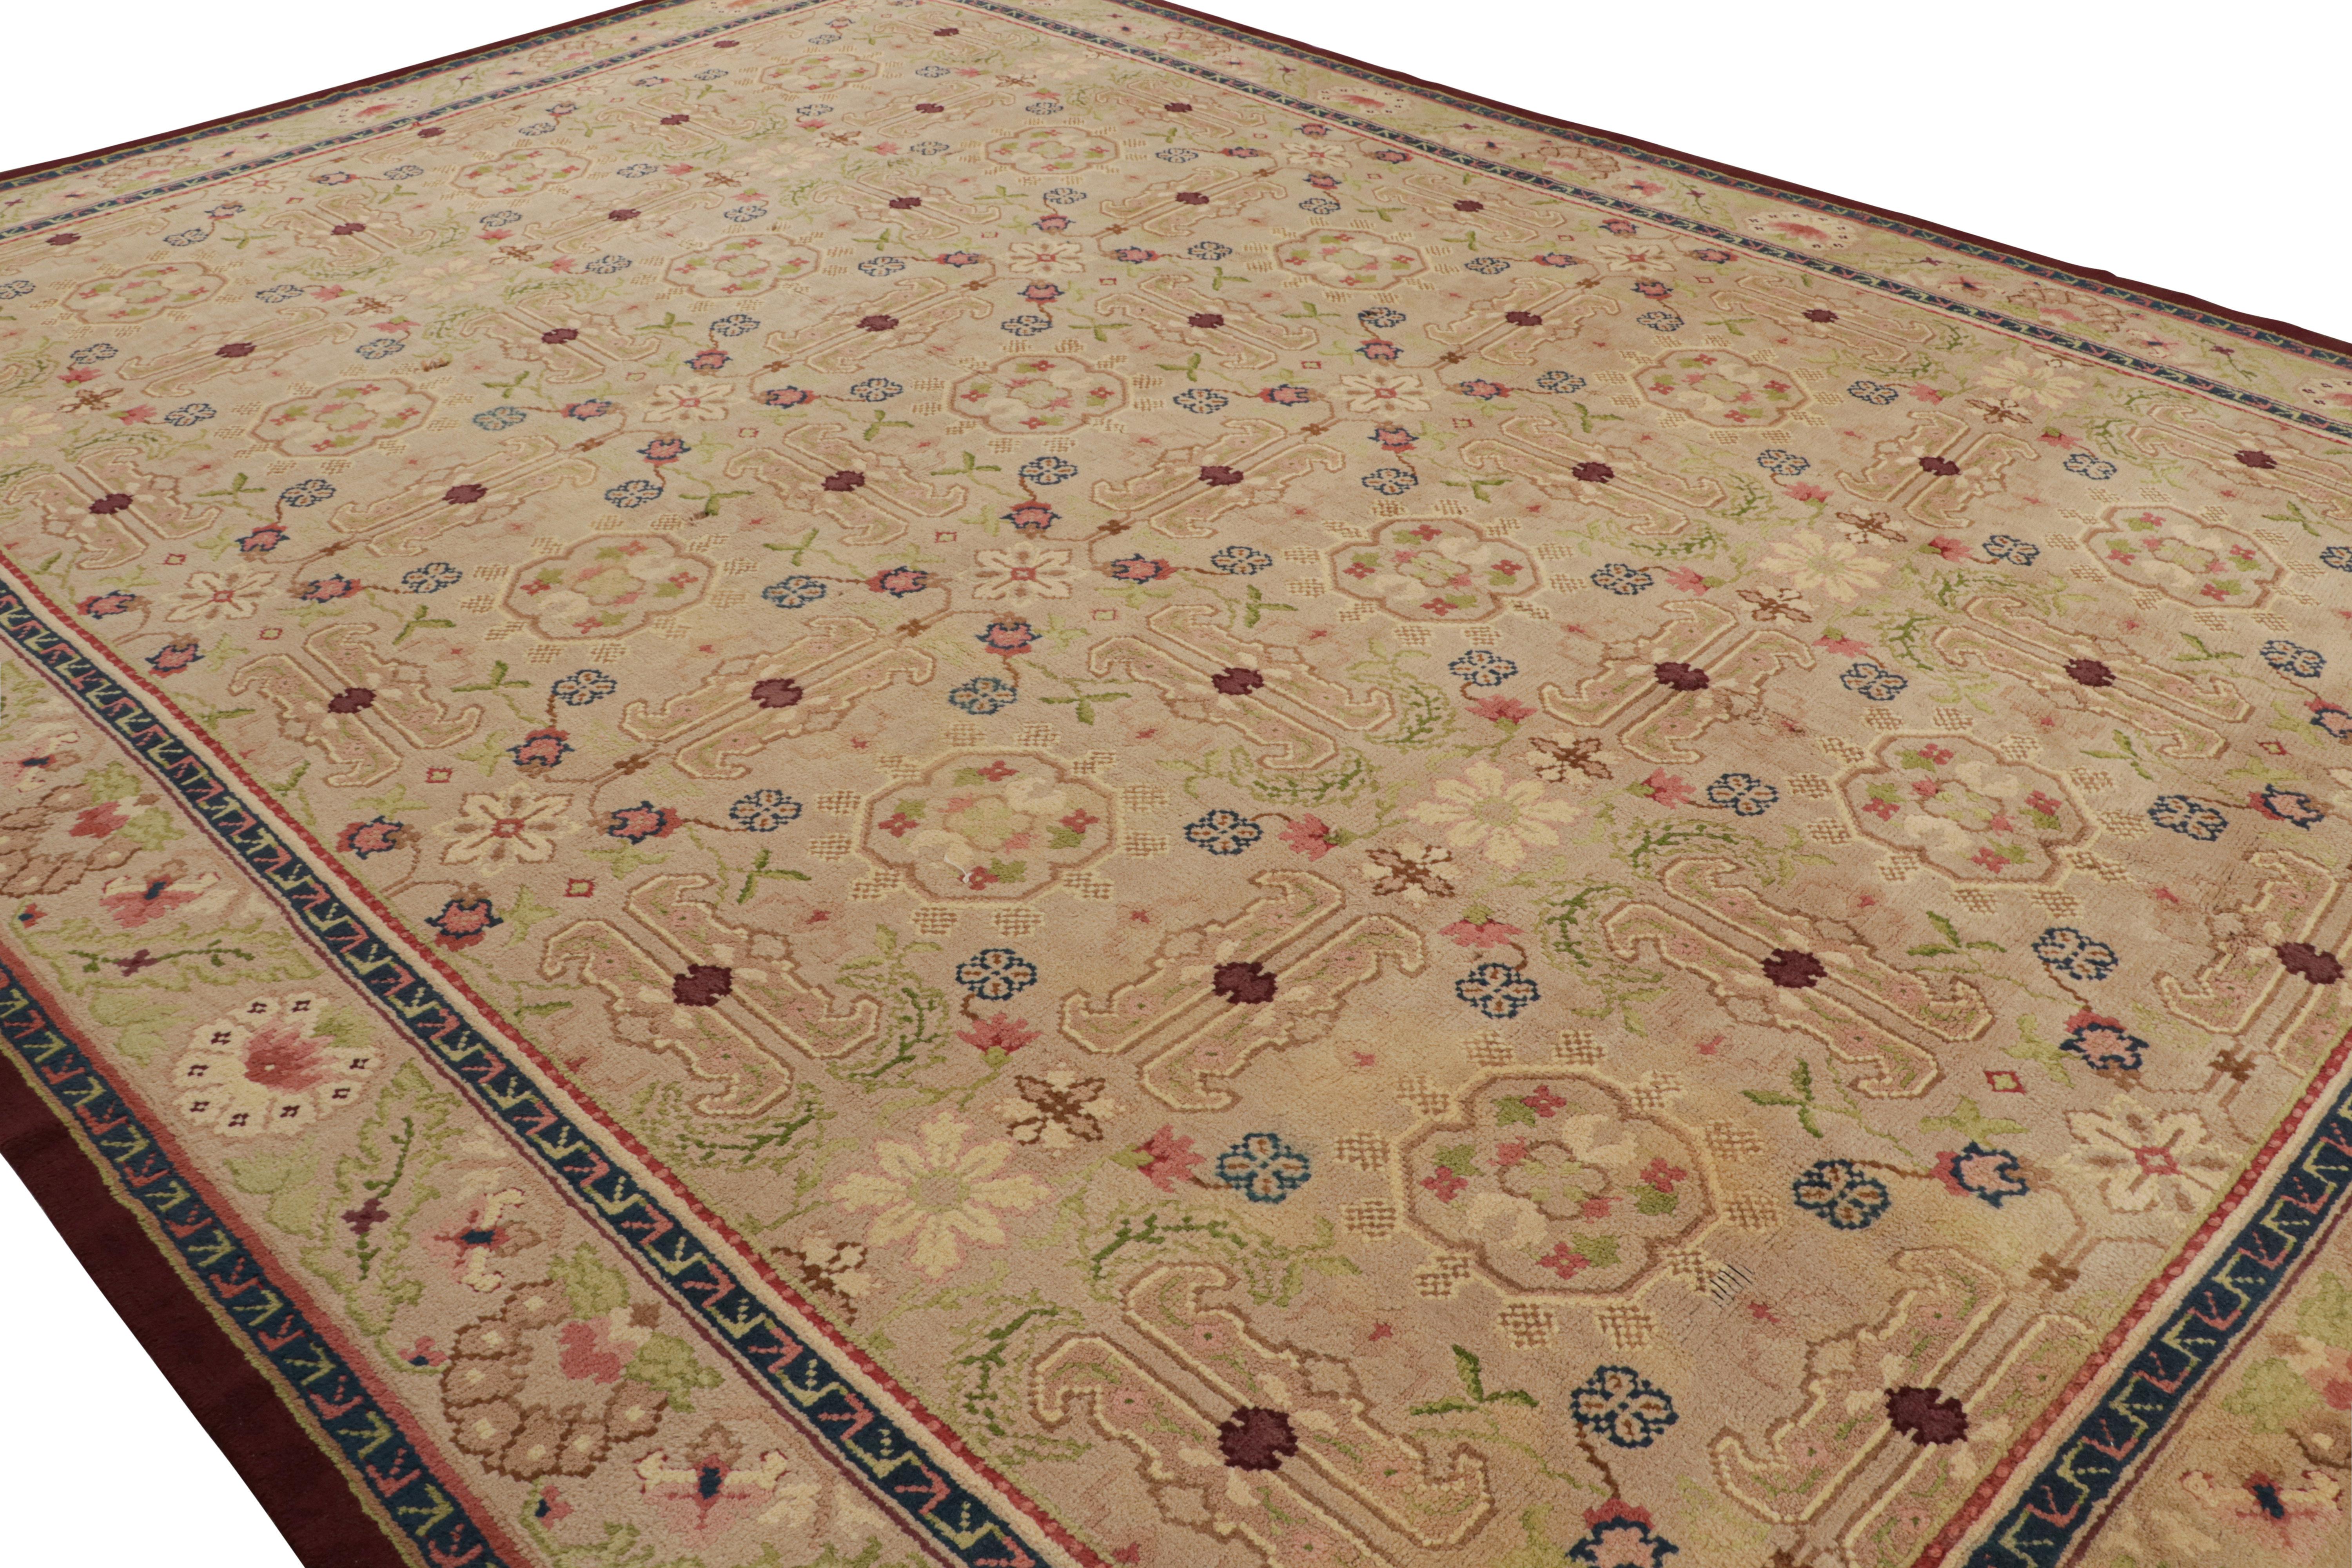 Dieser antike Savonnerie-Teppich im Format 13 x 18, handgeknüpft aus Wolle um 1920, ist eine aufregende Neuauflage der europäischen Teppichkollektion von Rug & Kilim.

Über das Design:

Dieser Teppich zeichnet sich durch beige-braune